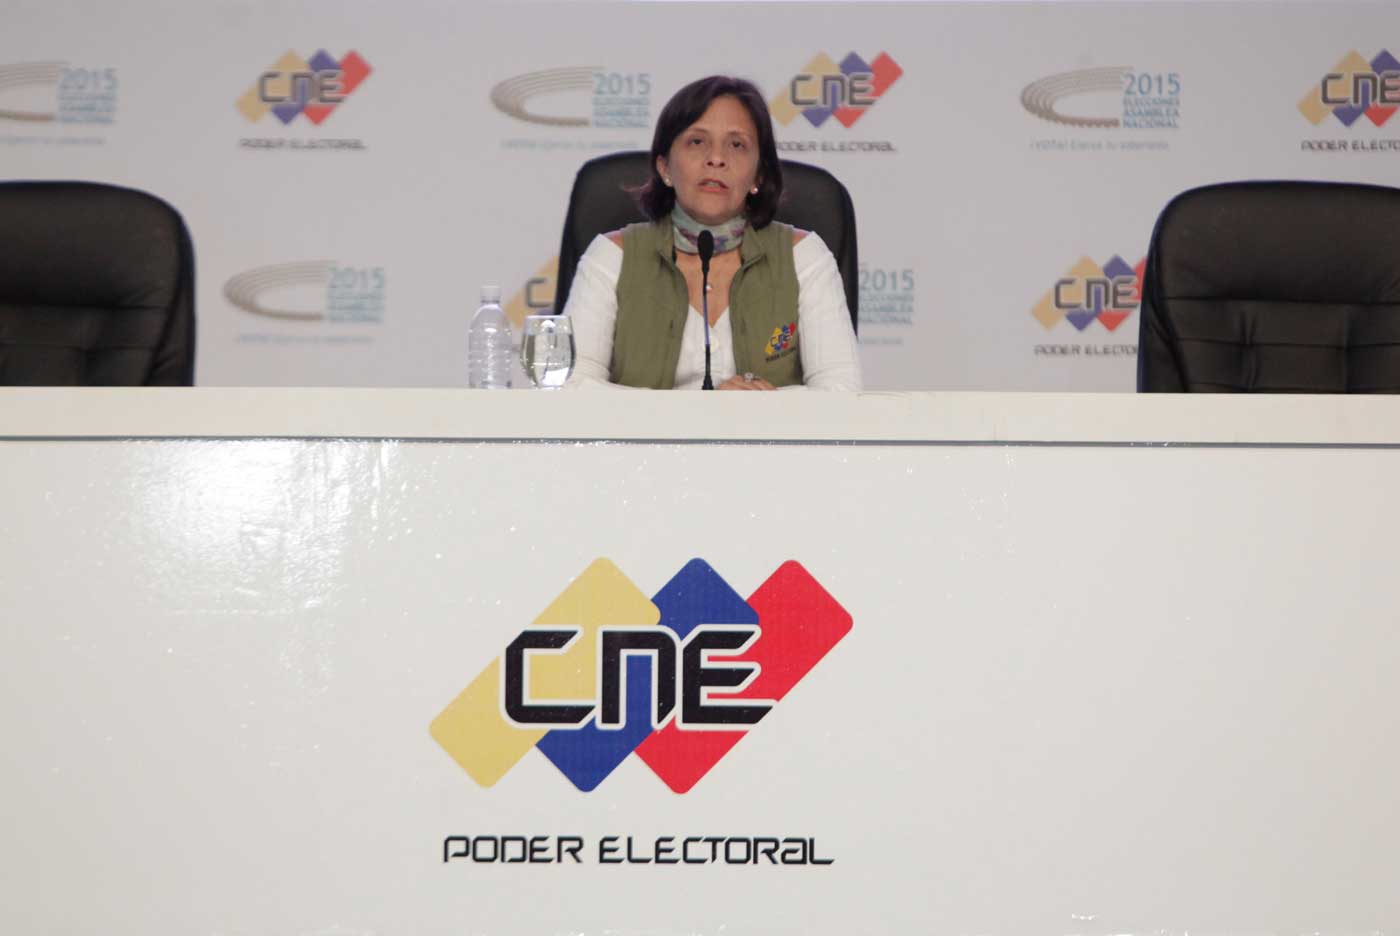 CNE extiende por una hora más el horario de votación “por presencia de electores en cola”